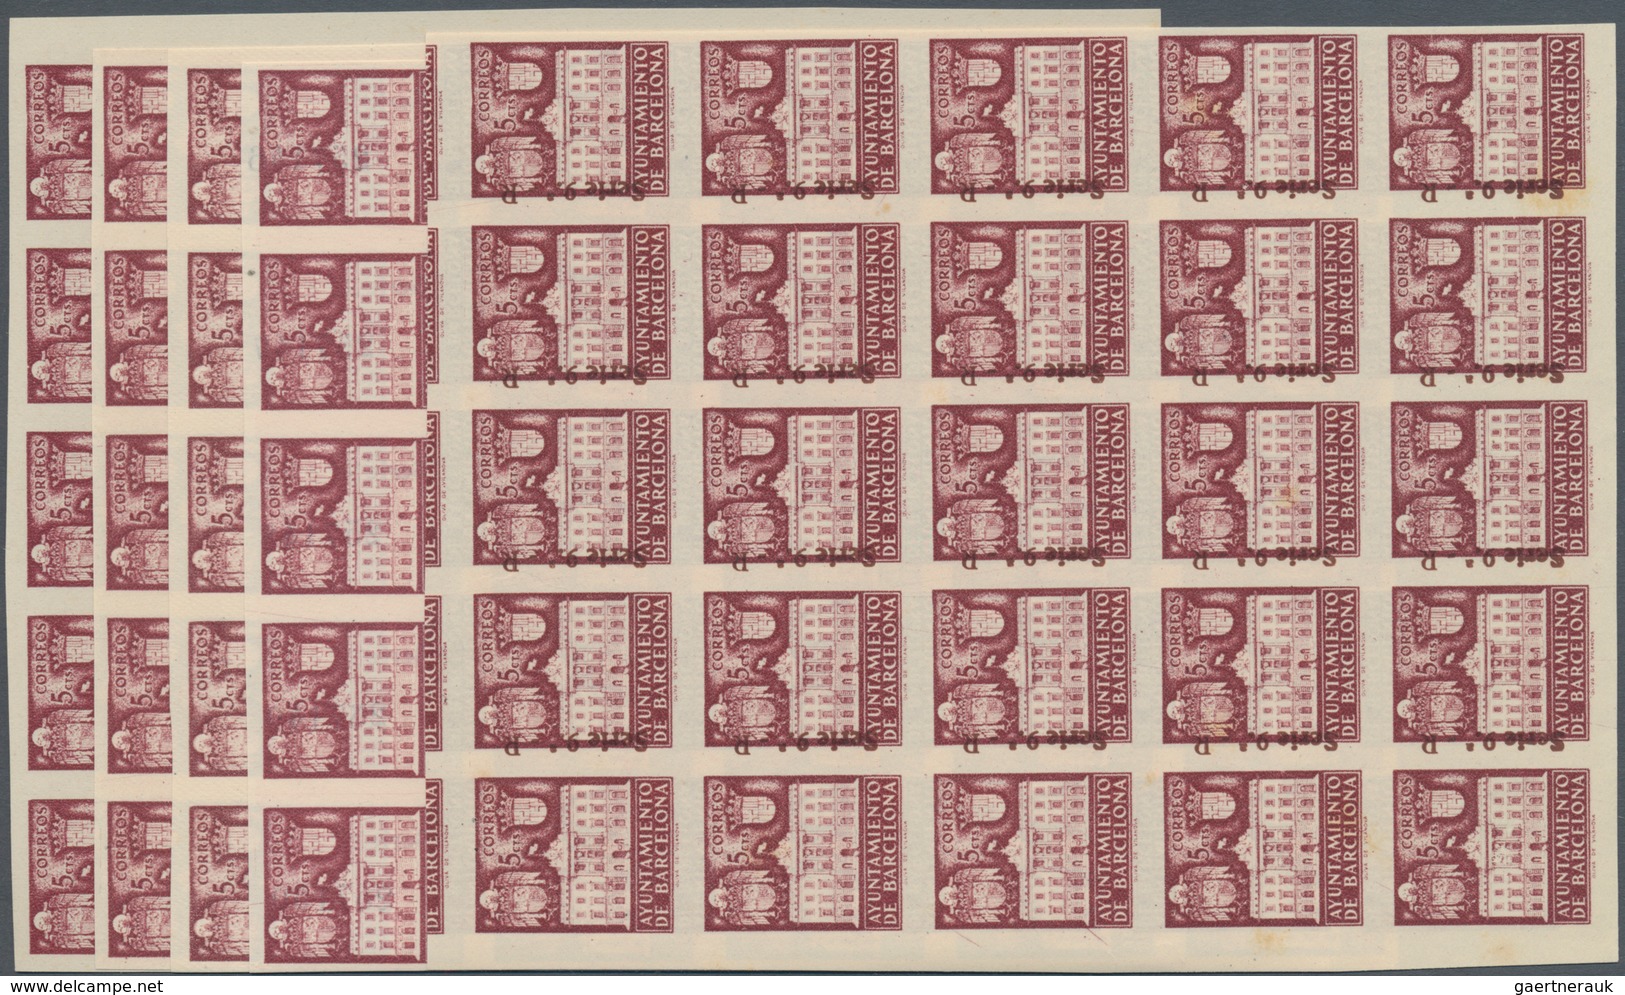 Spanien - Zwangszuschlagsmarken Für Barcelona: 1942, Town Hall Of Barcelona 5c. Lilac-red In Four IM - War Tax